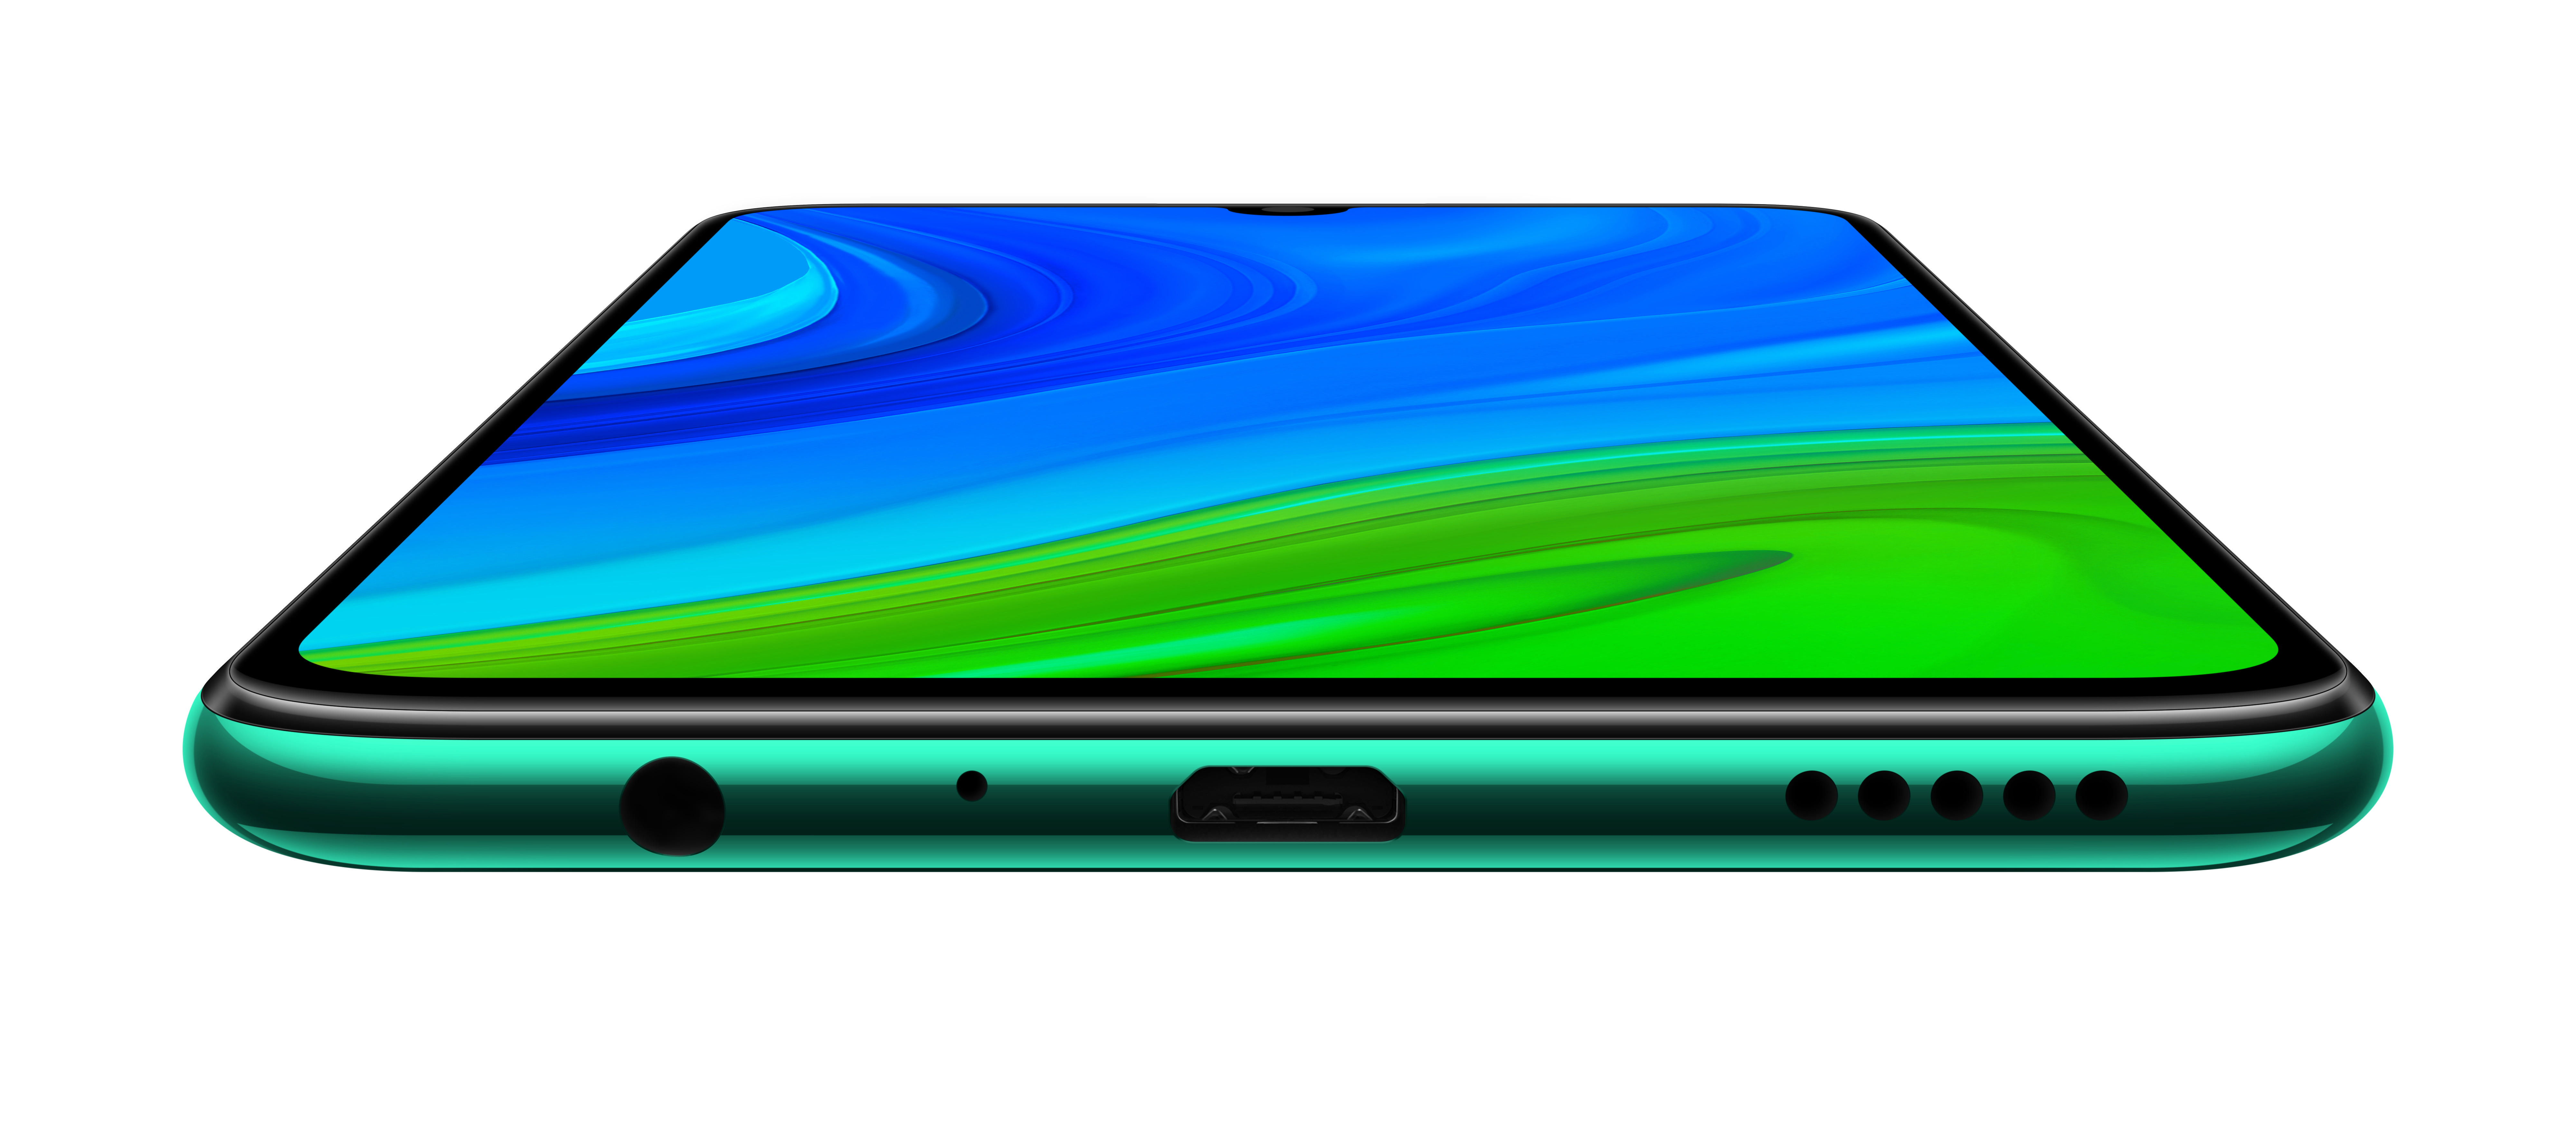 Green smart GB 128 Emerald Dual 2020 SIM P HUAWEI